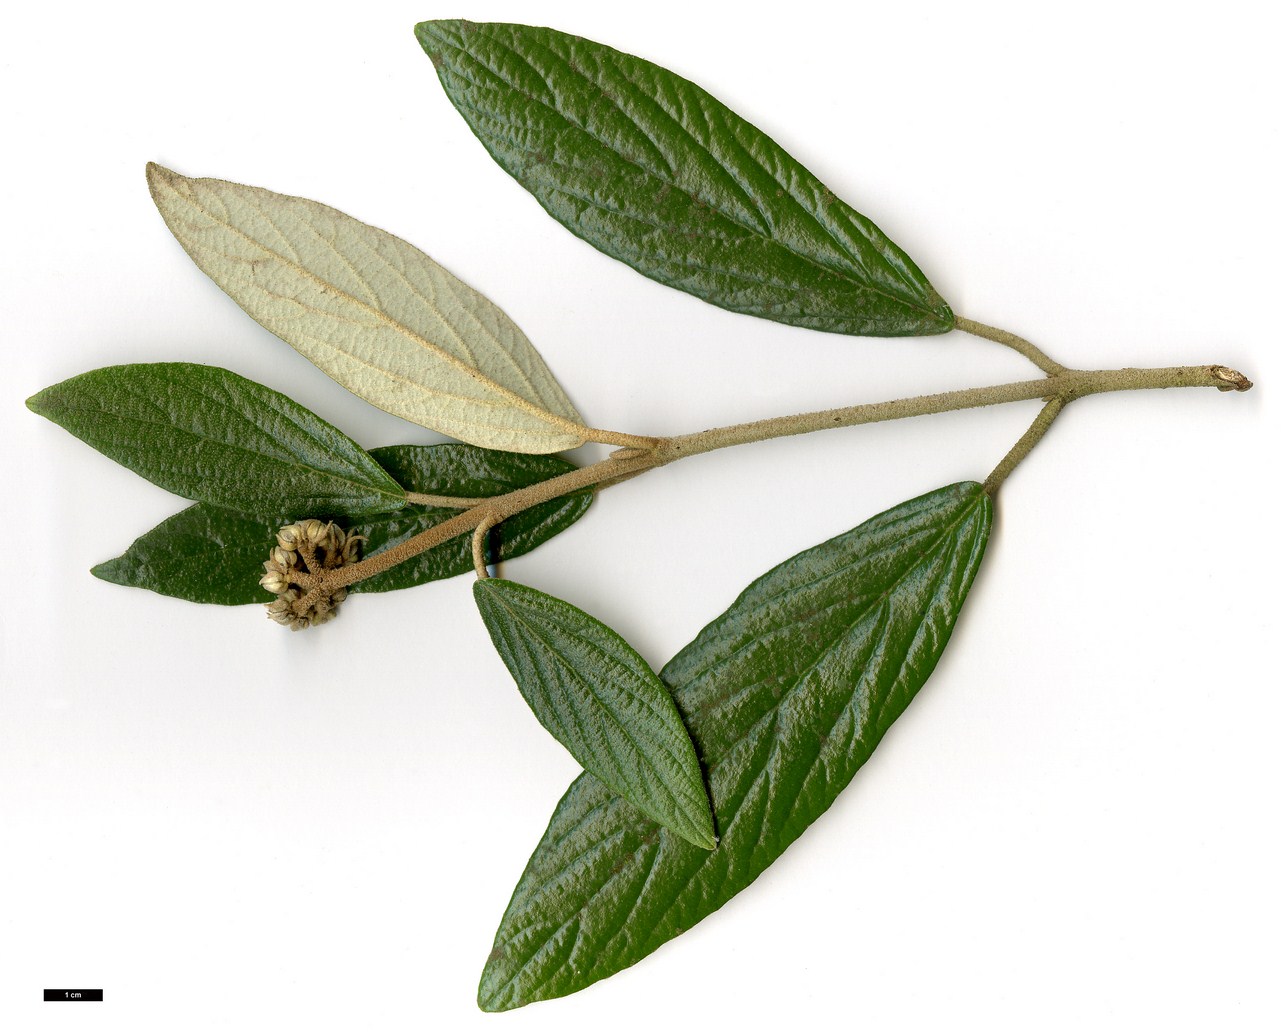 High resolution image: Family: Adoxaceae - Genus: Viburnum - Taxon: 'Pragense' (V.rythidophyllum × V.utile)